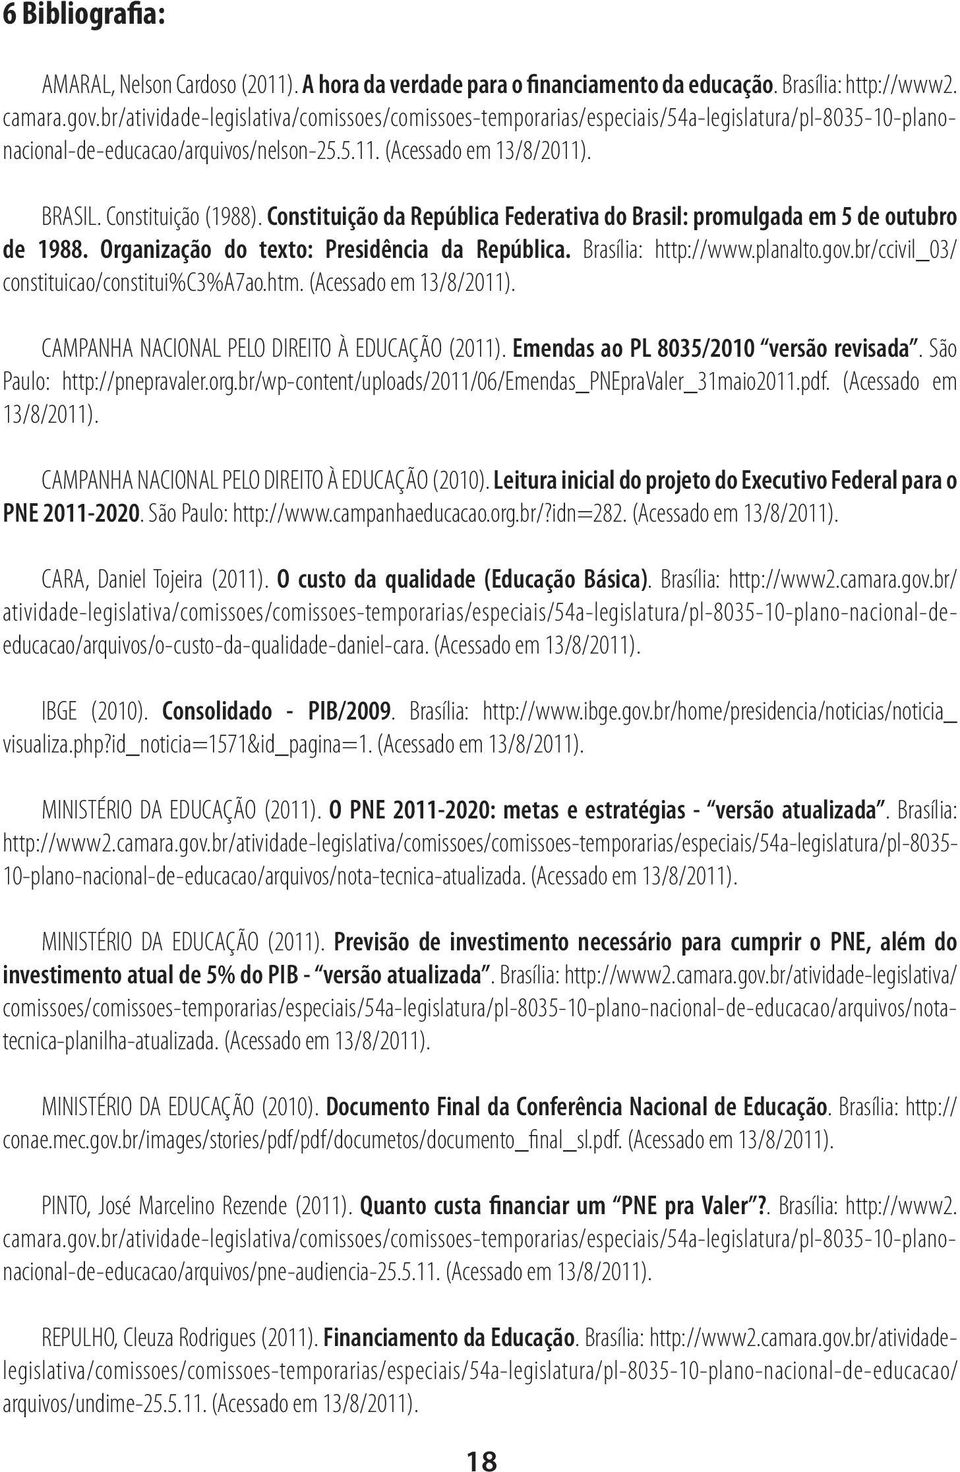 Constituição da República Federativa do Brasil: promulgada em 5 de outubro de 1988. Organização do texto: Presidência da República. Brasília: http://www.planalto.gov.